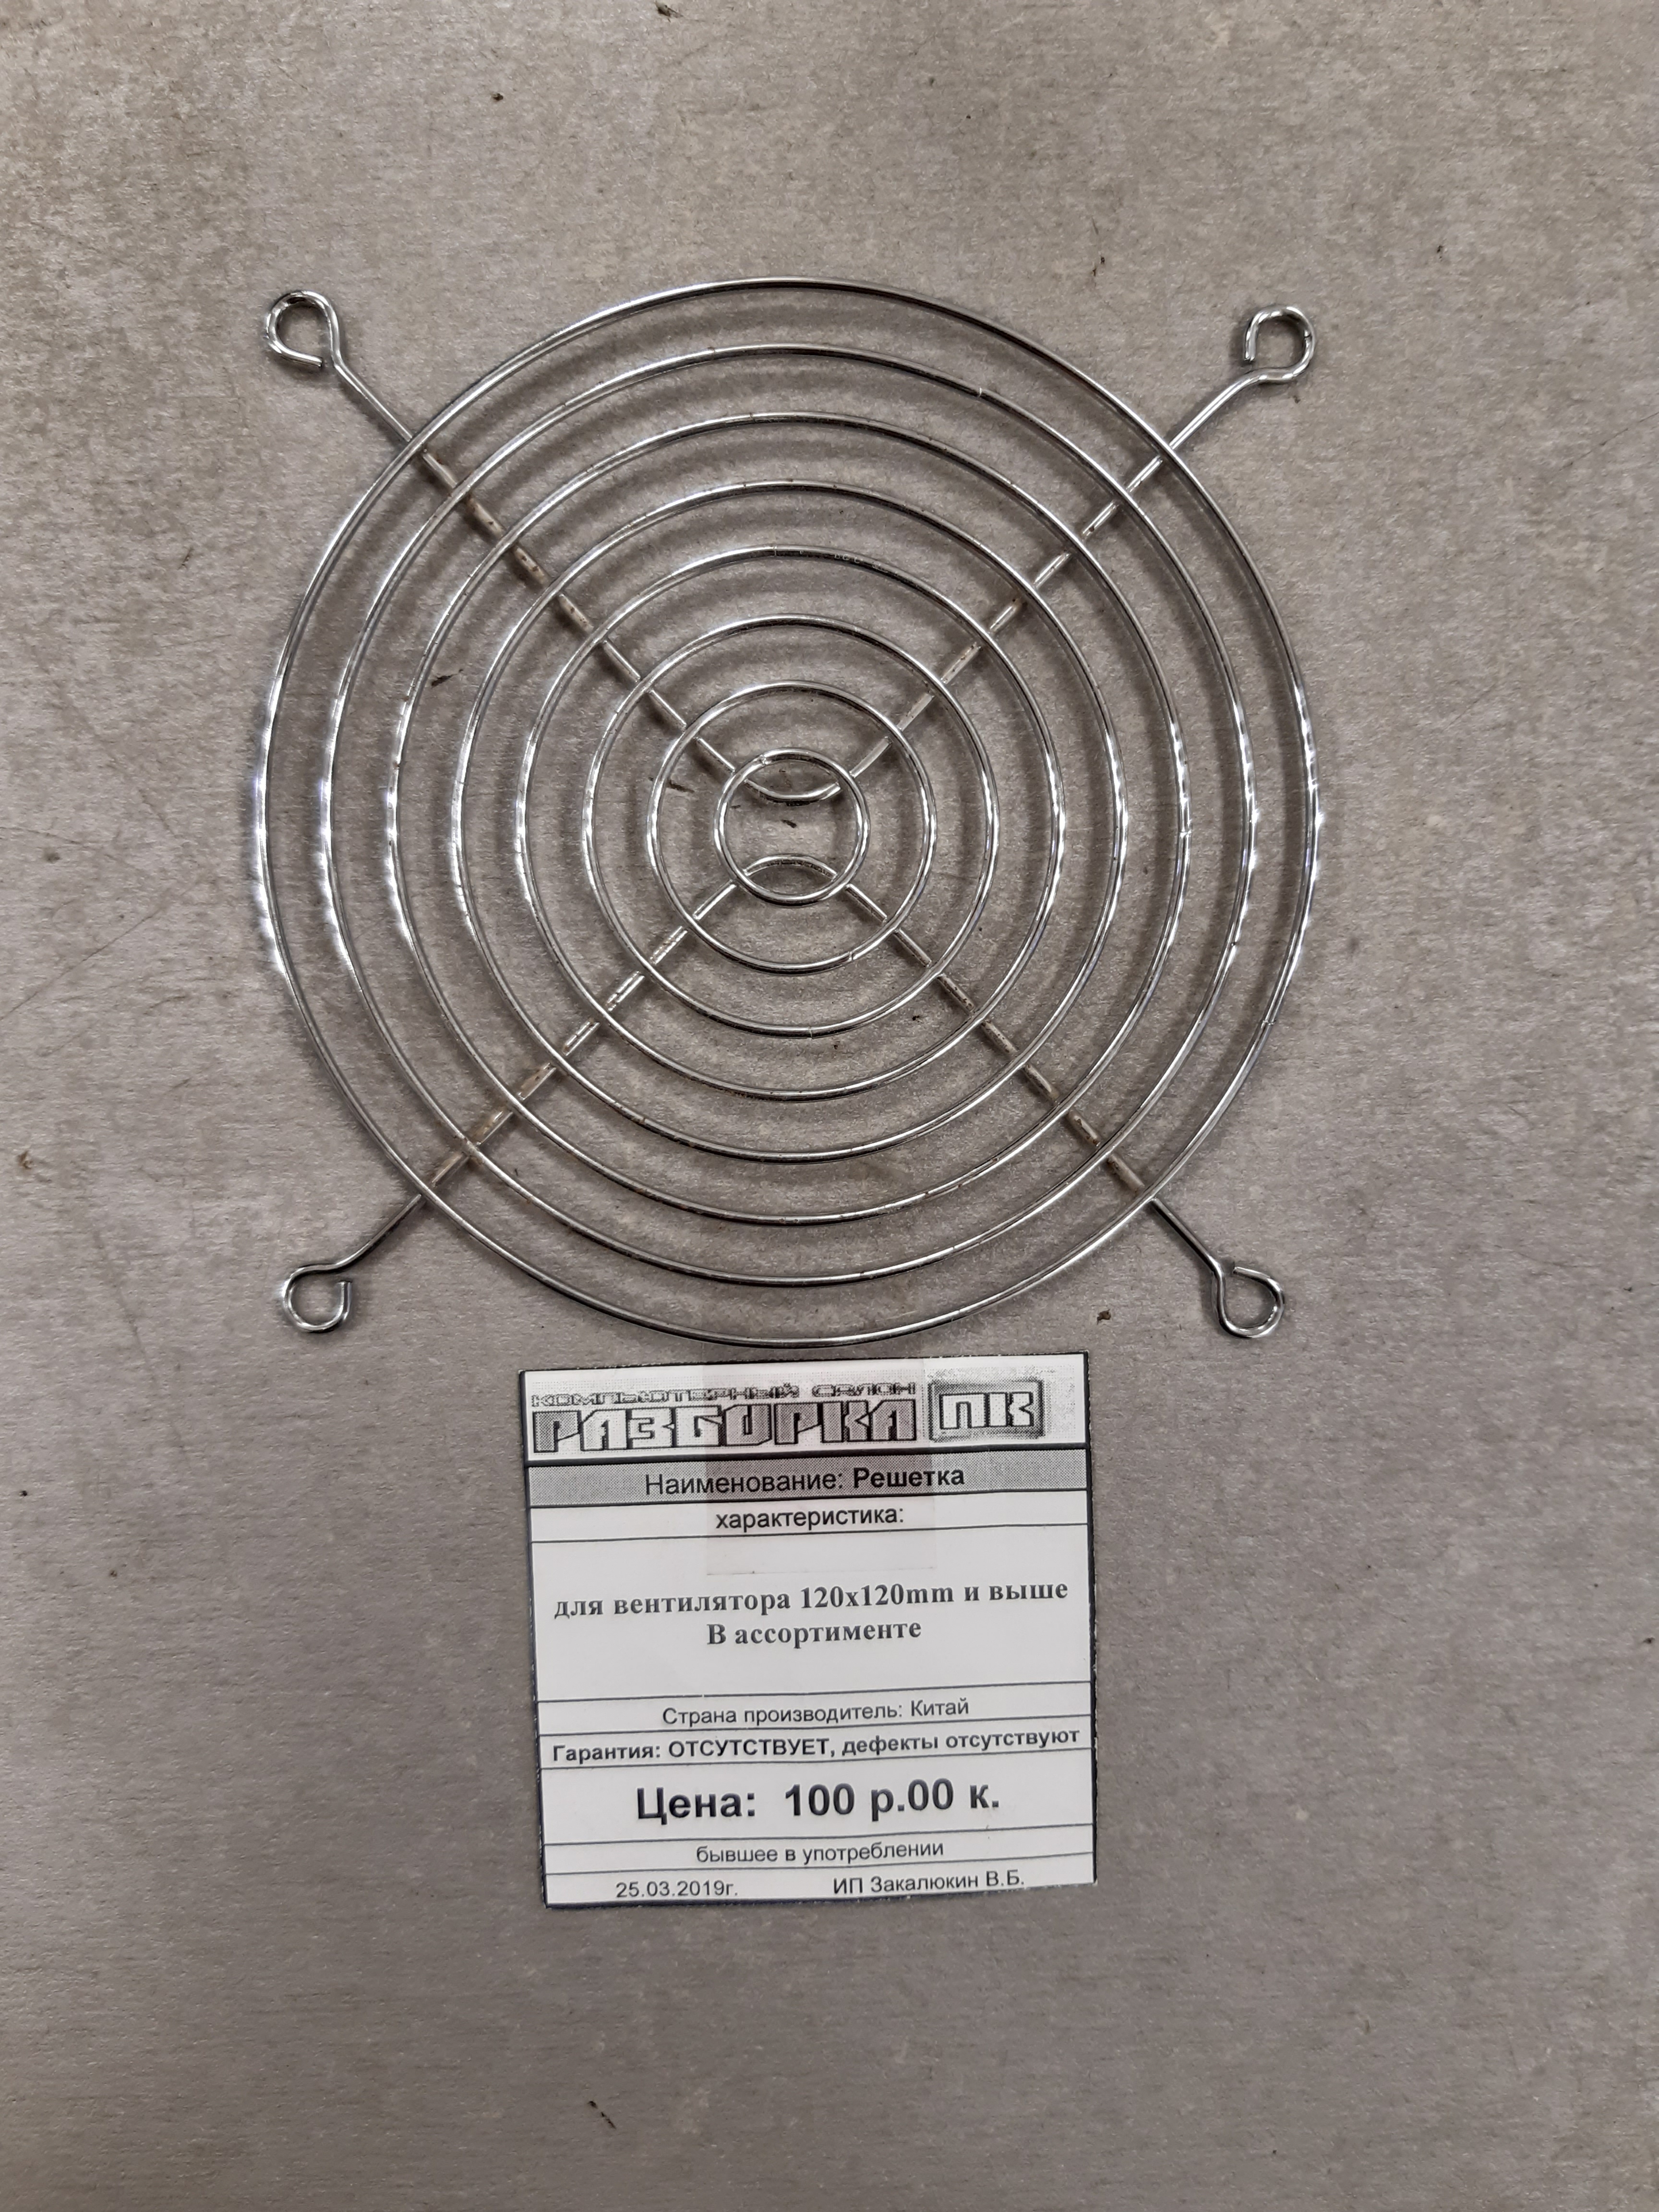 Решетка для вентилятора 120x120mm